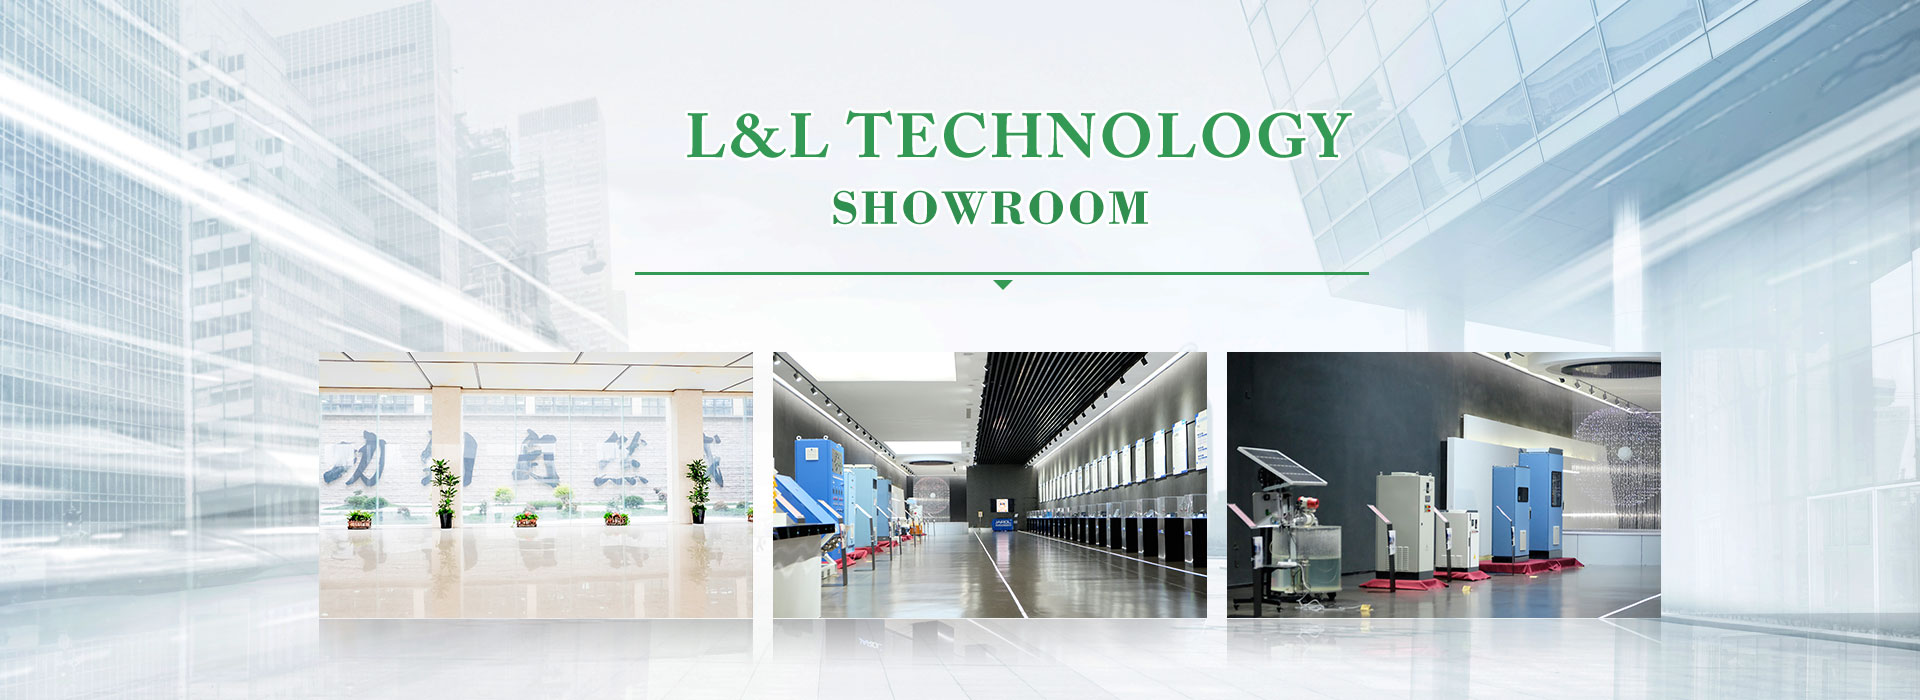 Zhejiang L&L Technology Co.,Ltd. Bilik pameran